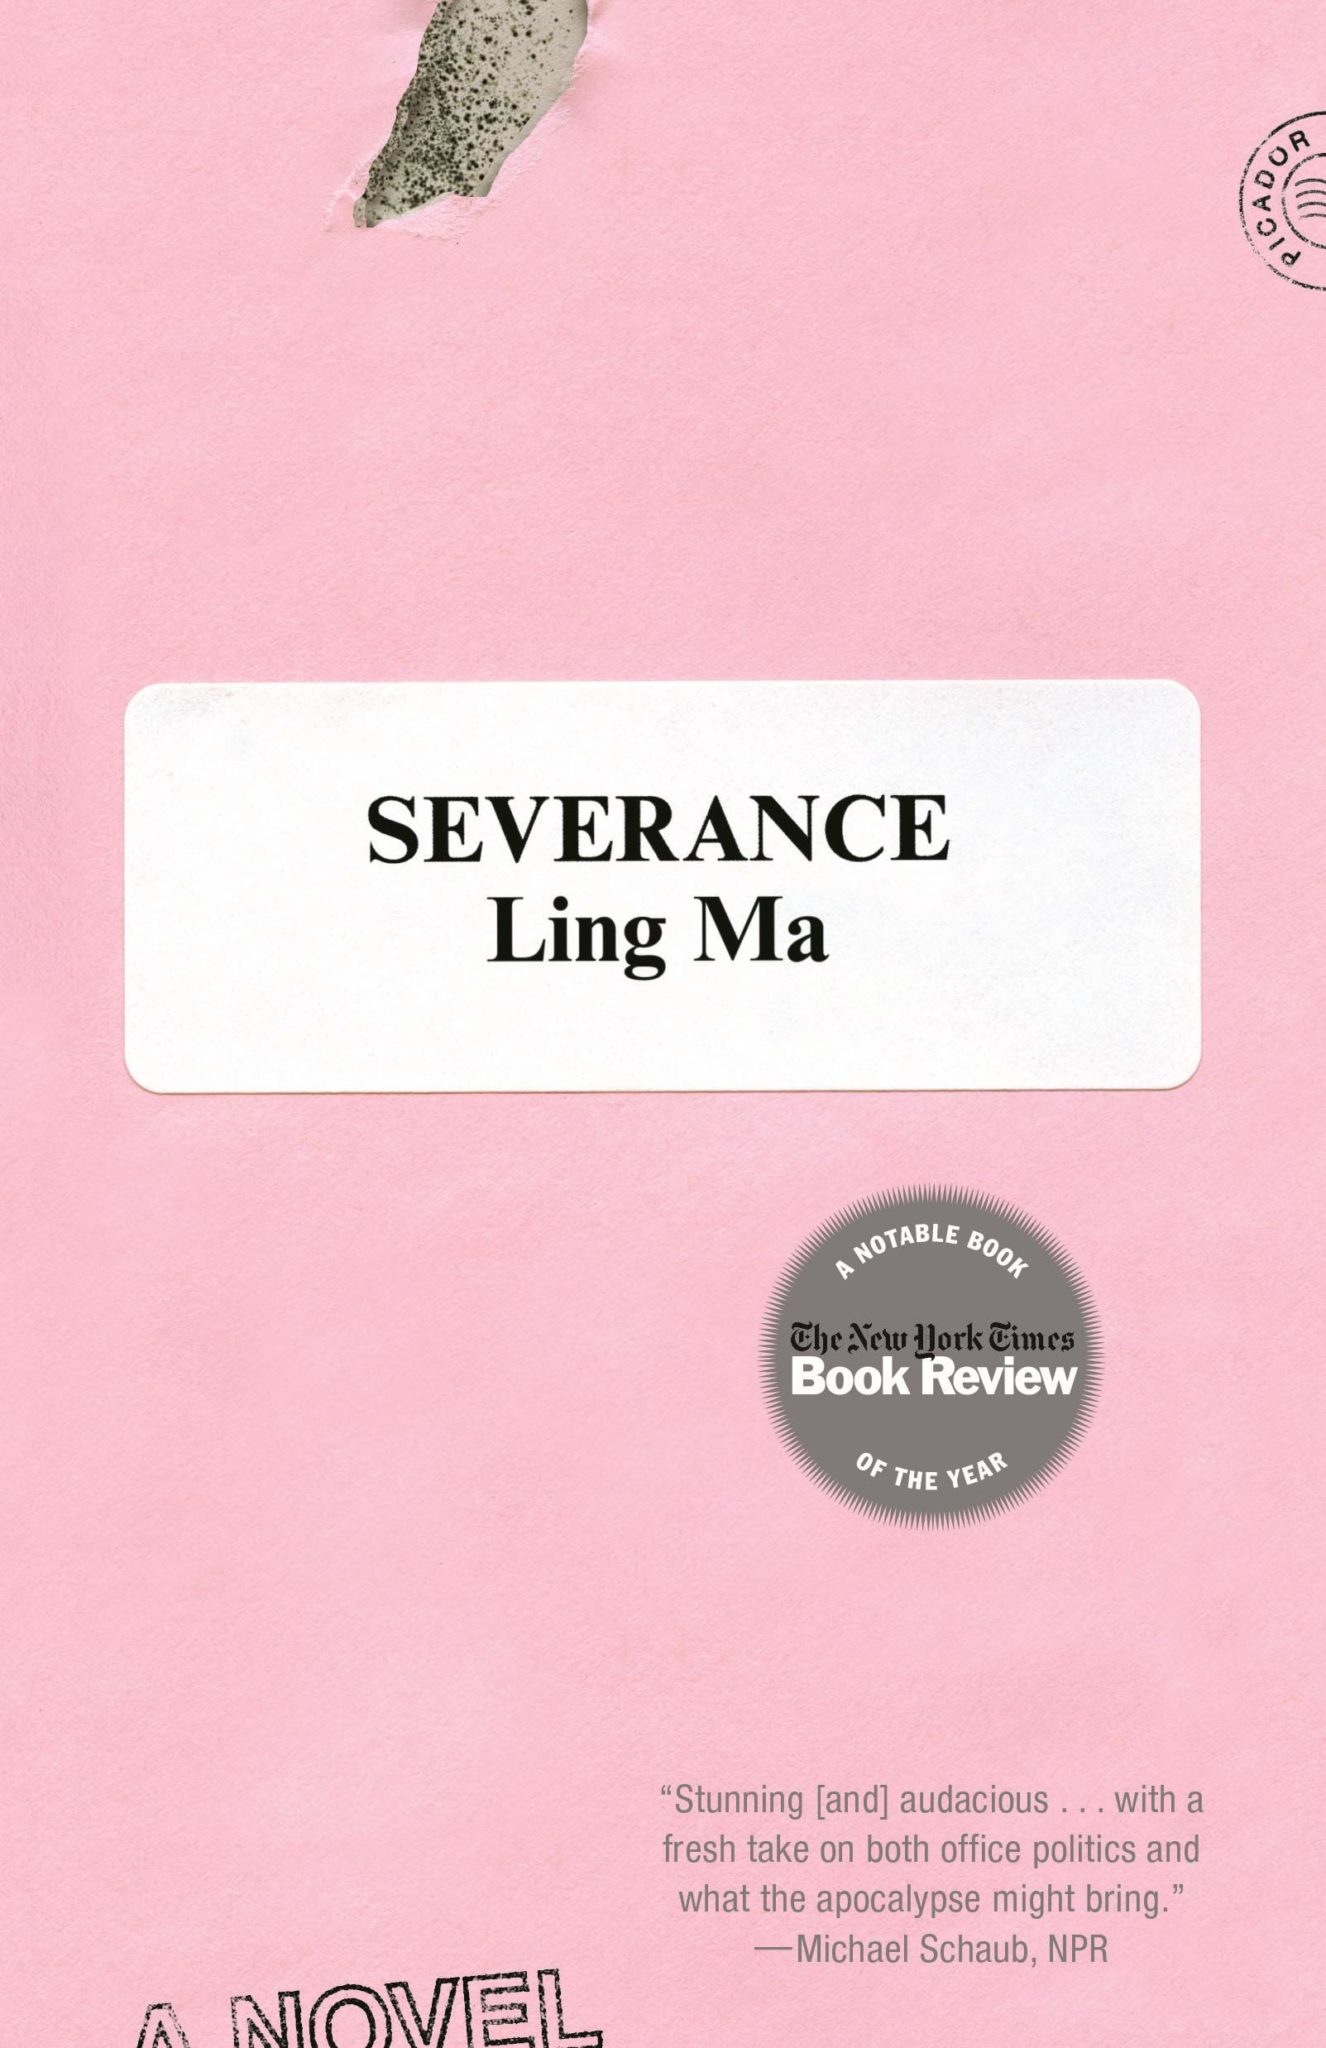 books like severance ling ma